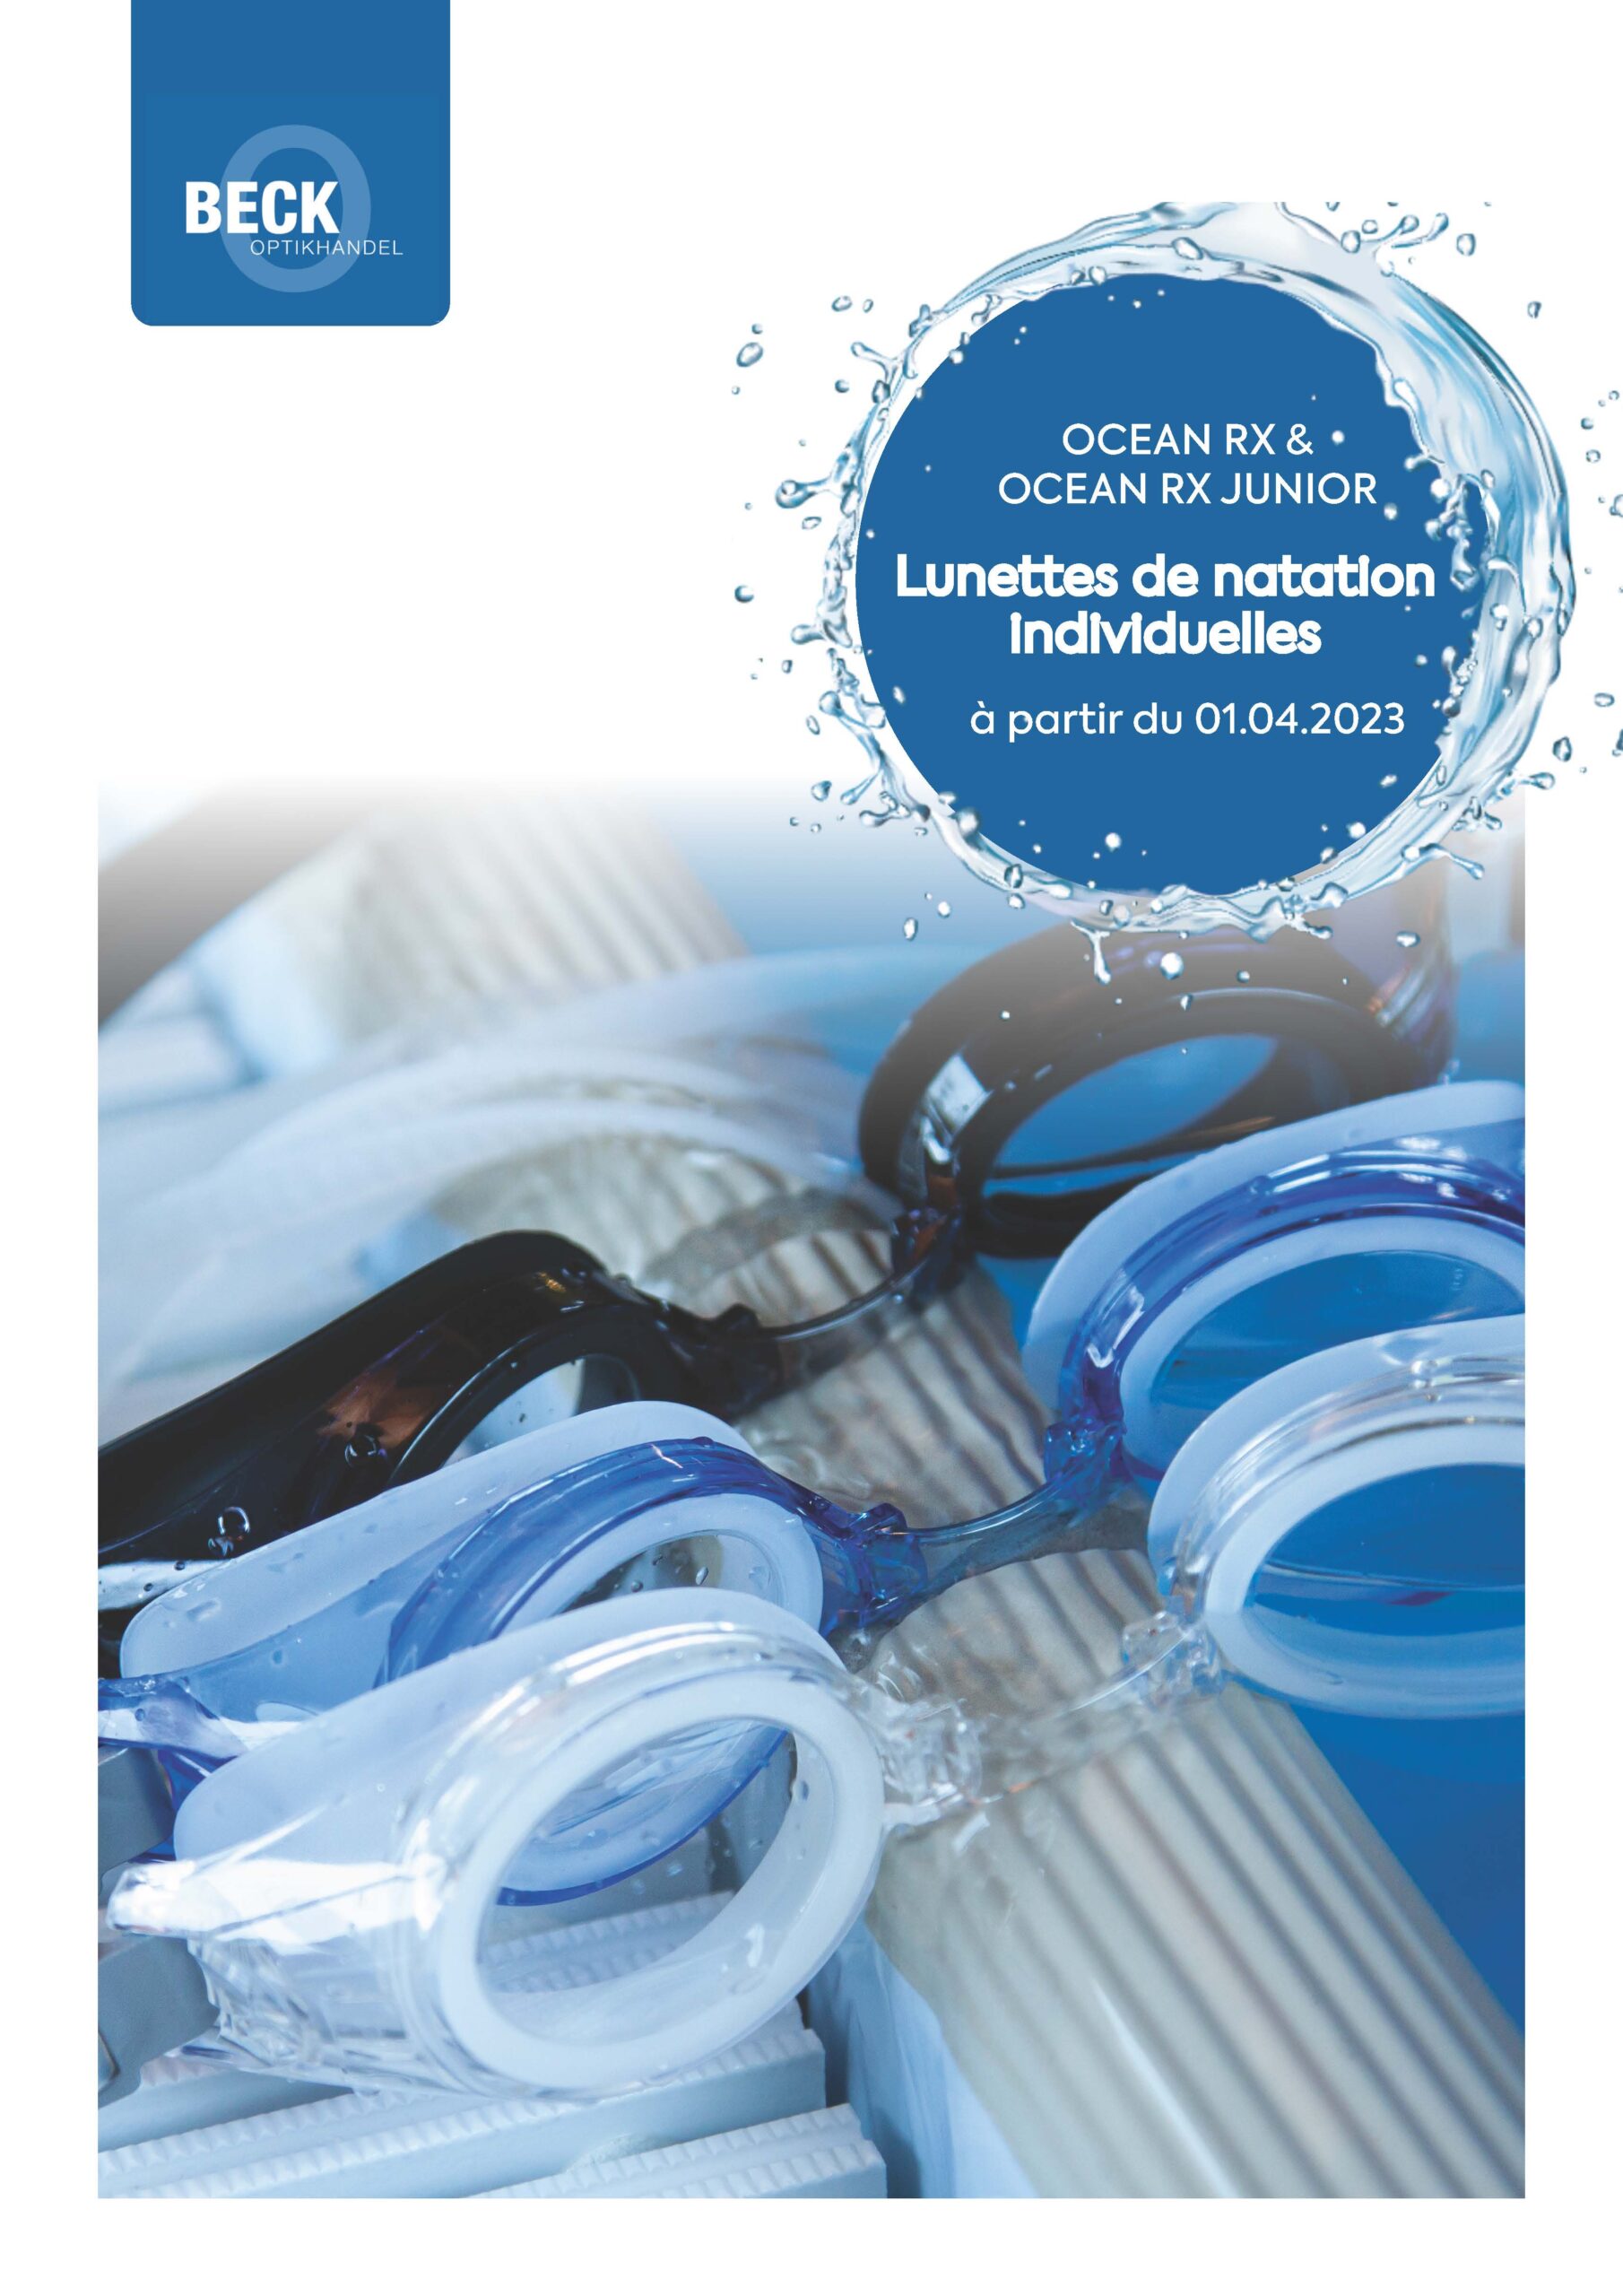 OceanRx lunettes de natation individuelle